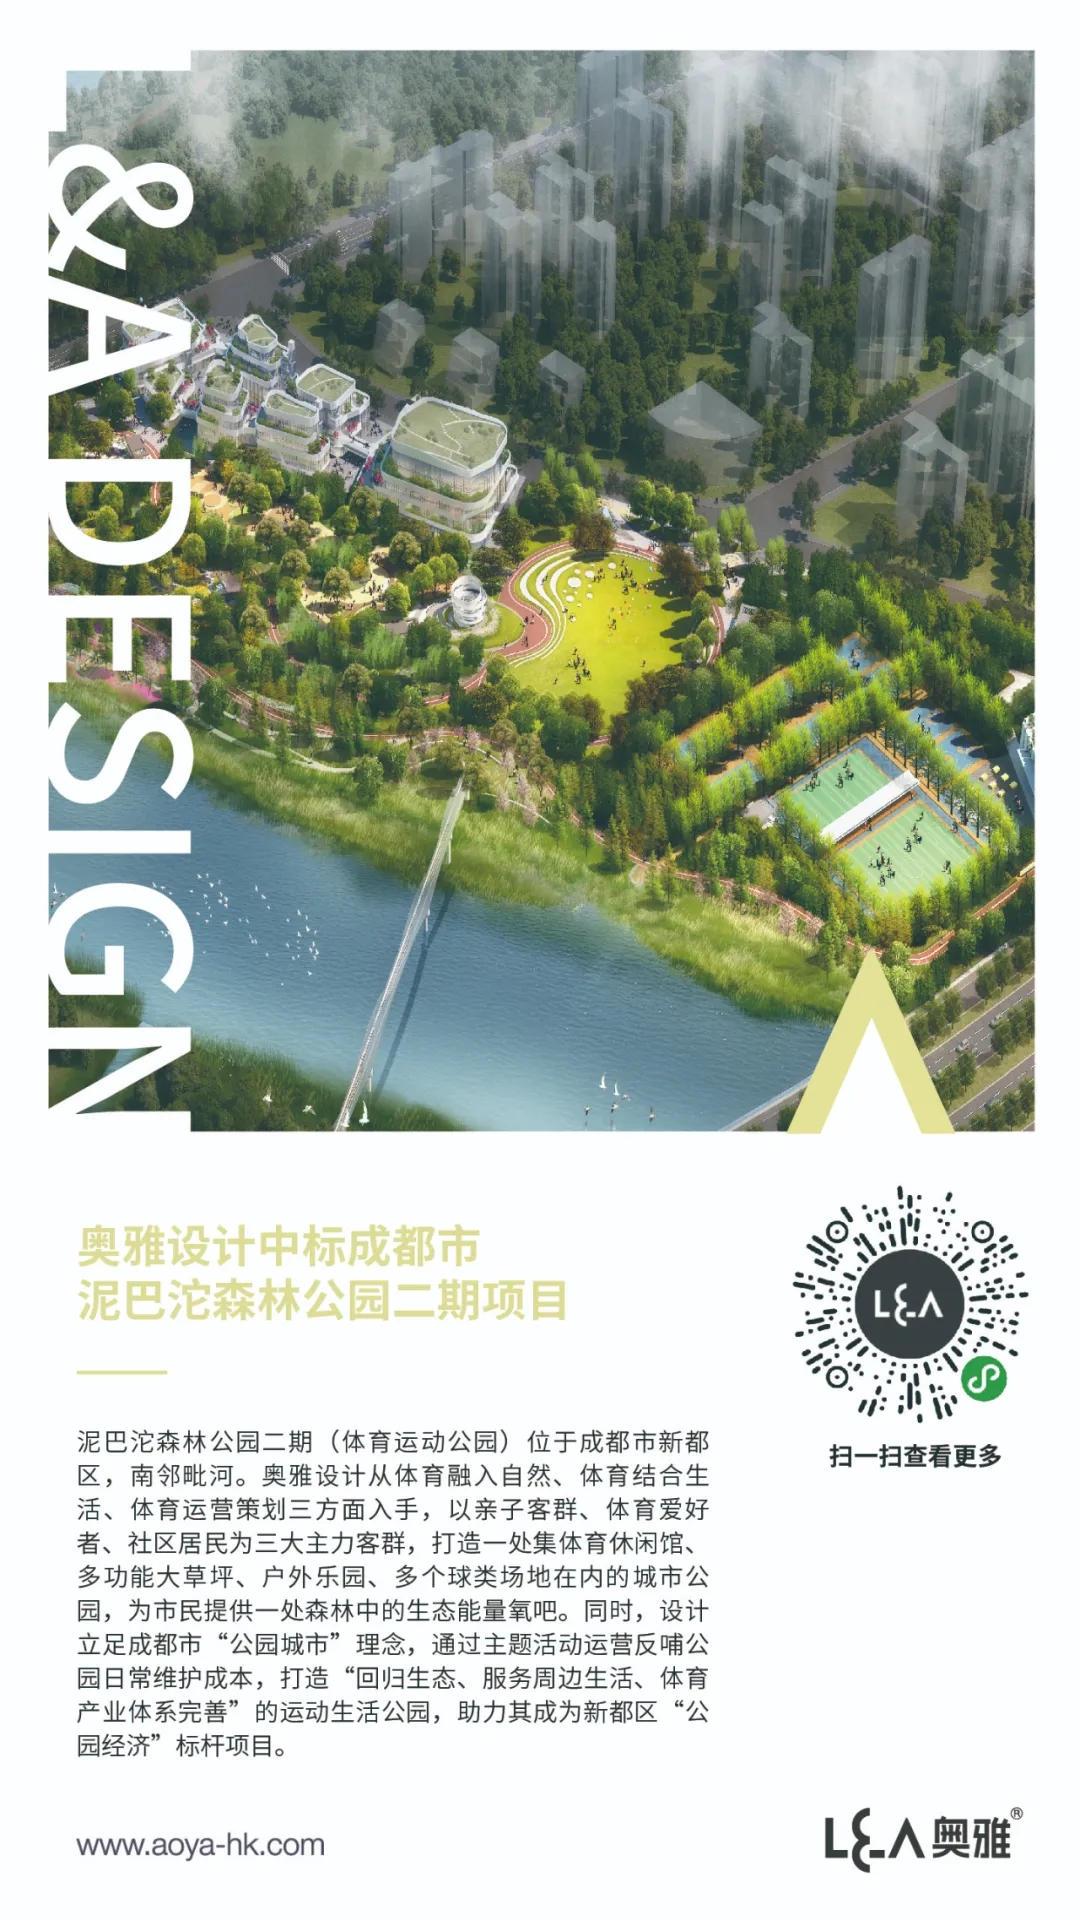 奥雅设计中标成都市泥巴沱森林公园二期项目 | 喜讯